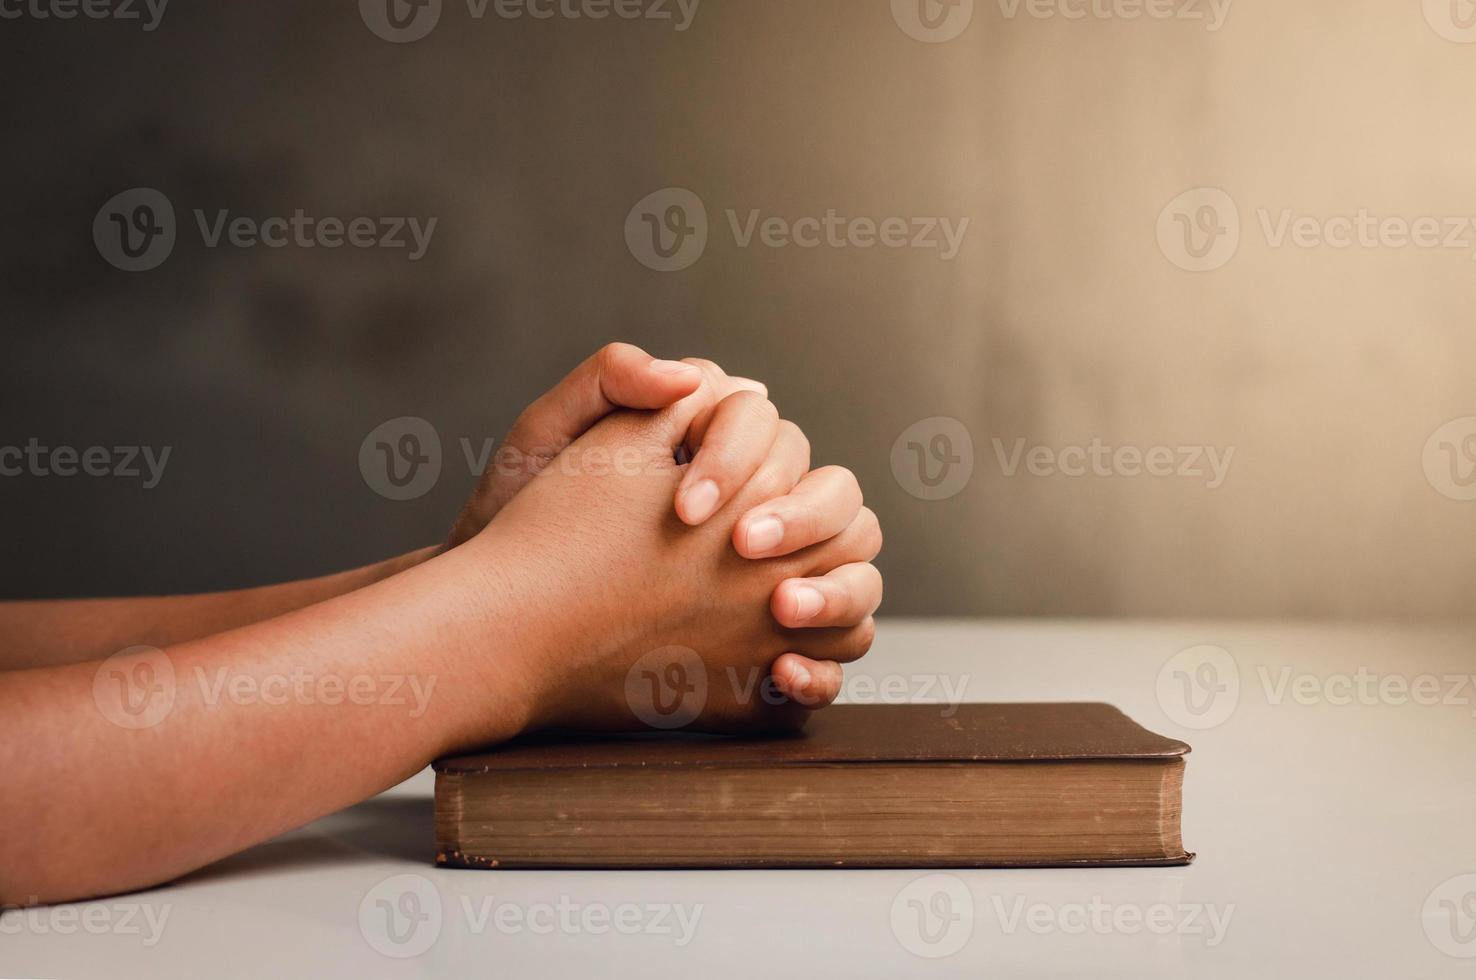 crise da vida cristã reze a deus homens rezem por uma bênção de deus por uma vida melhor. mão do homem orando a Deus com a Bíblia. acredite no bem um punhado de orações sobre uma mesa de madeira foto